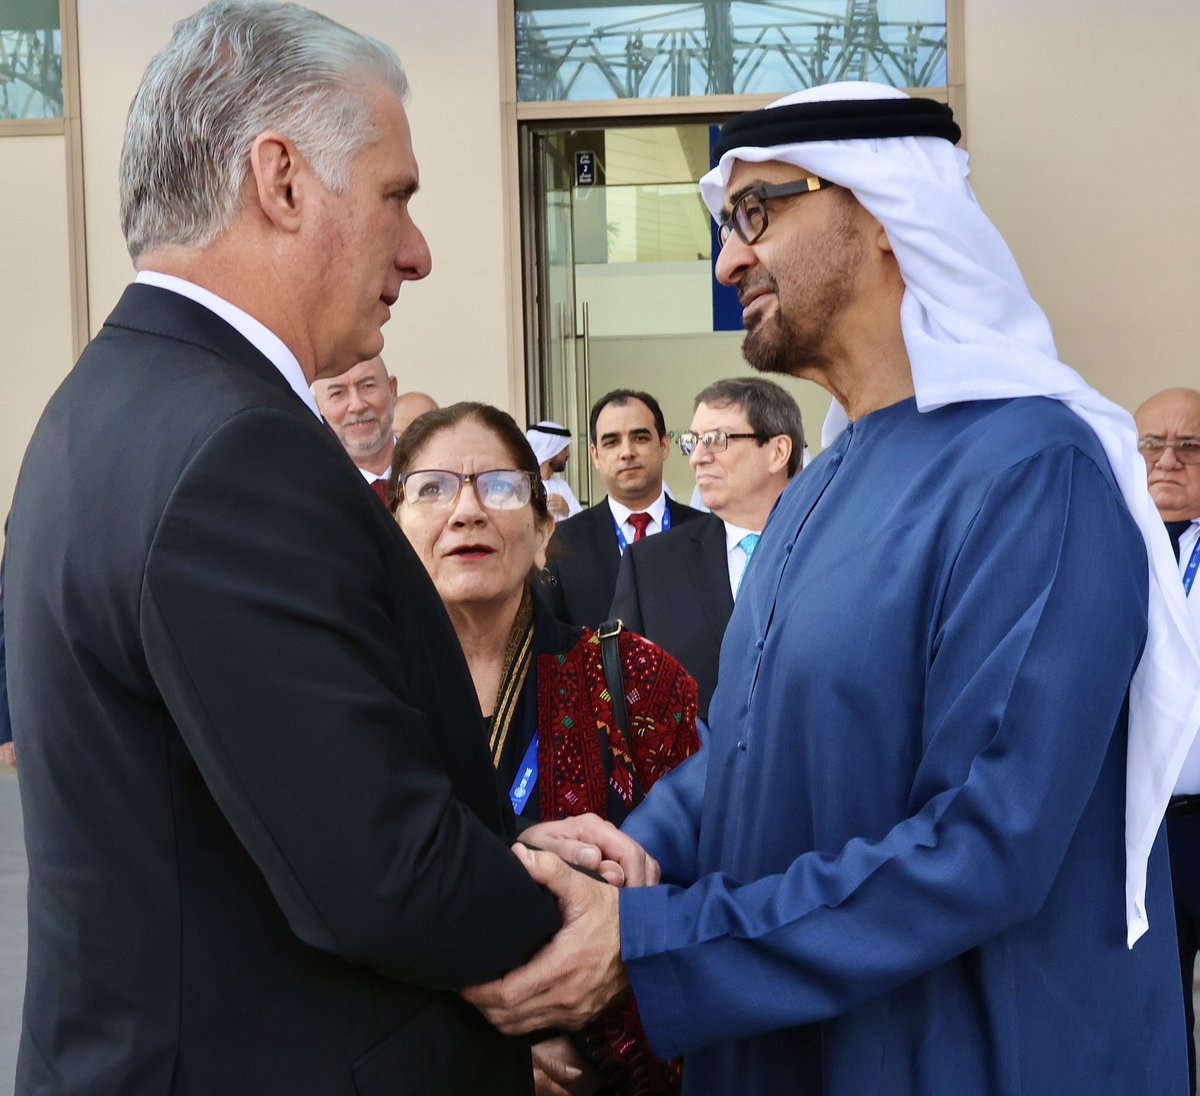 🇨🇺| El presidente @DiazCanelB se reunió hoy en Dubai con Su Alteza el Jeque @MohamedBinZayed, presidente de Emiratos Árabes Unidos, como parte de la visita oficial que realiza a este país. #DíazCanelEnEAU